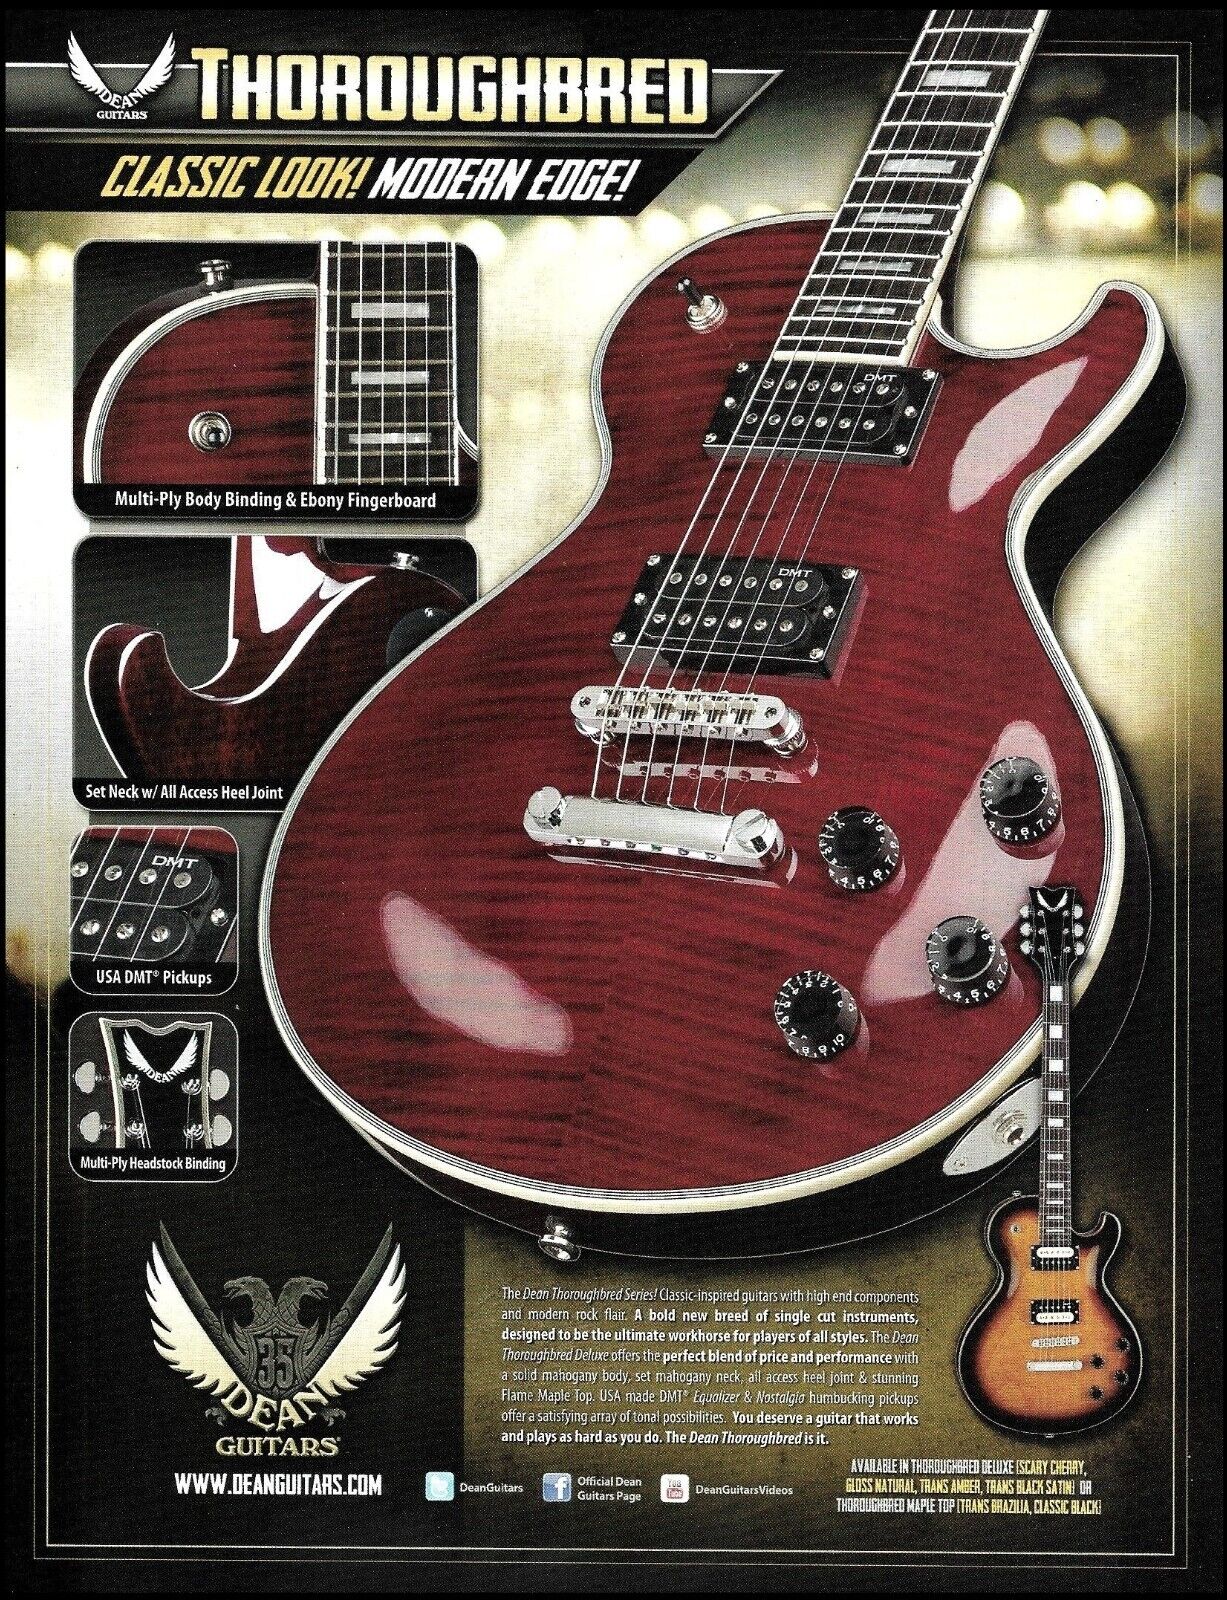 Dean Thoroughbred Series guitar 2012 advertisement 8 x 11 ad print